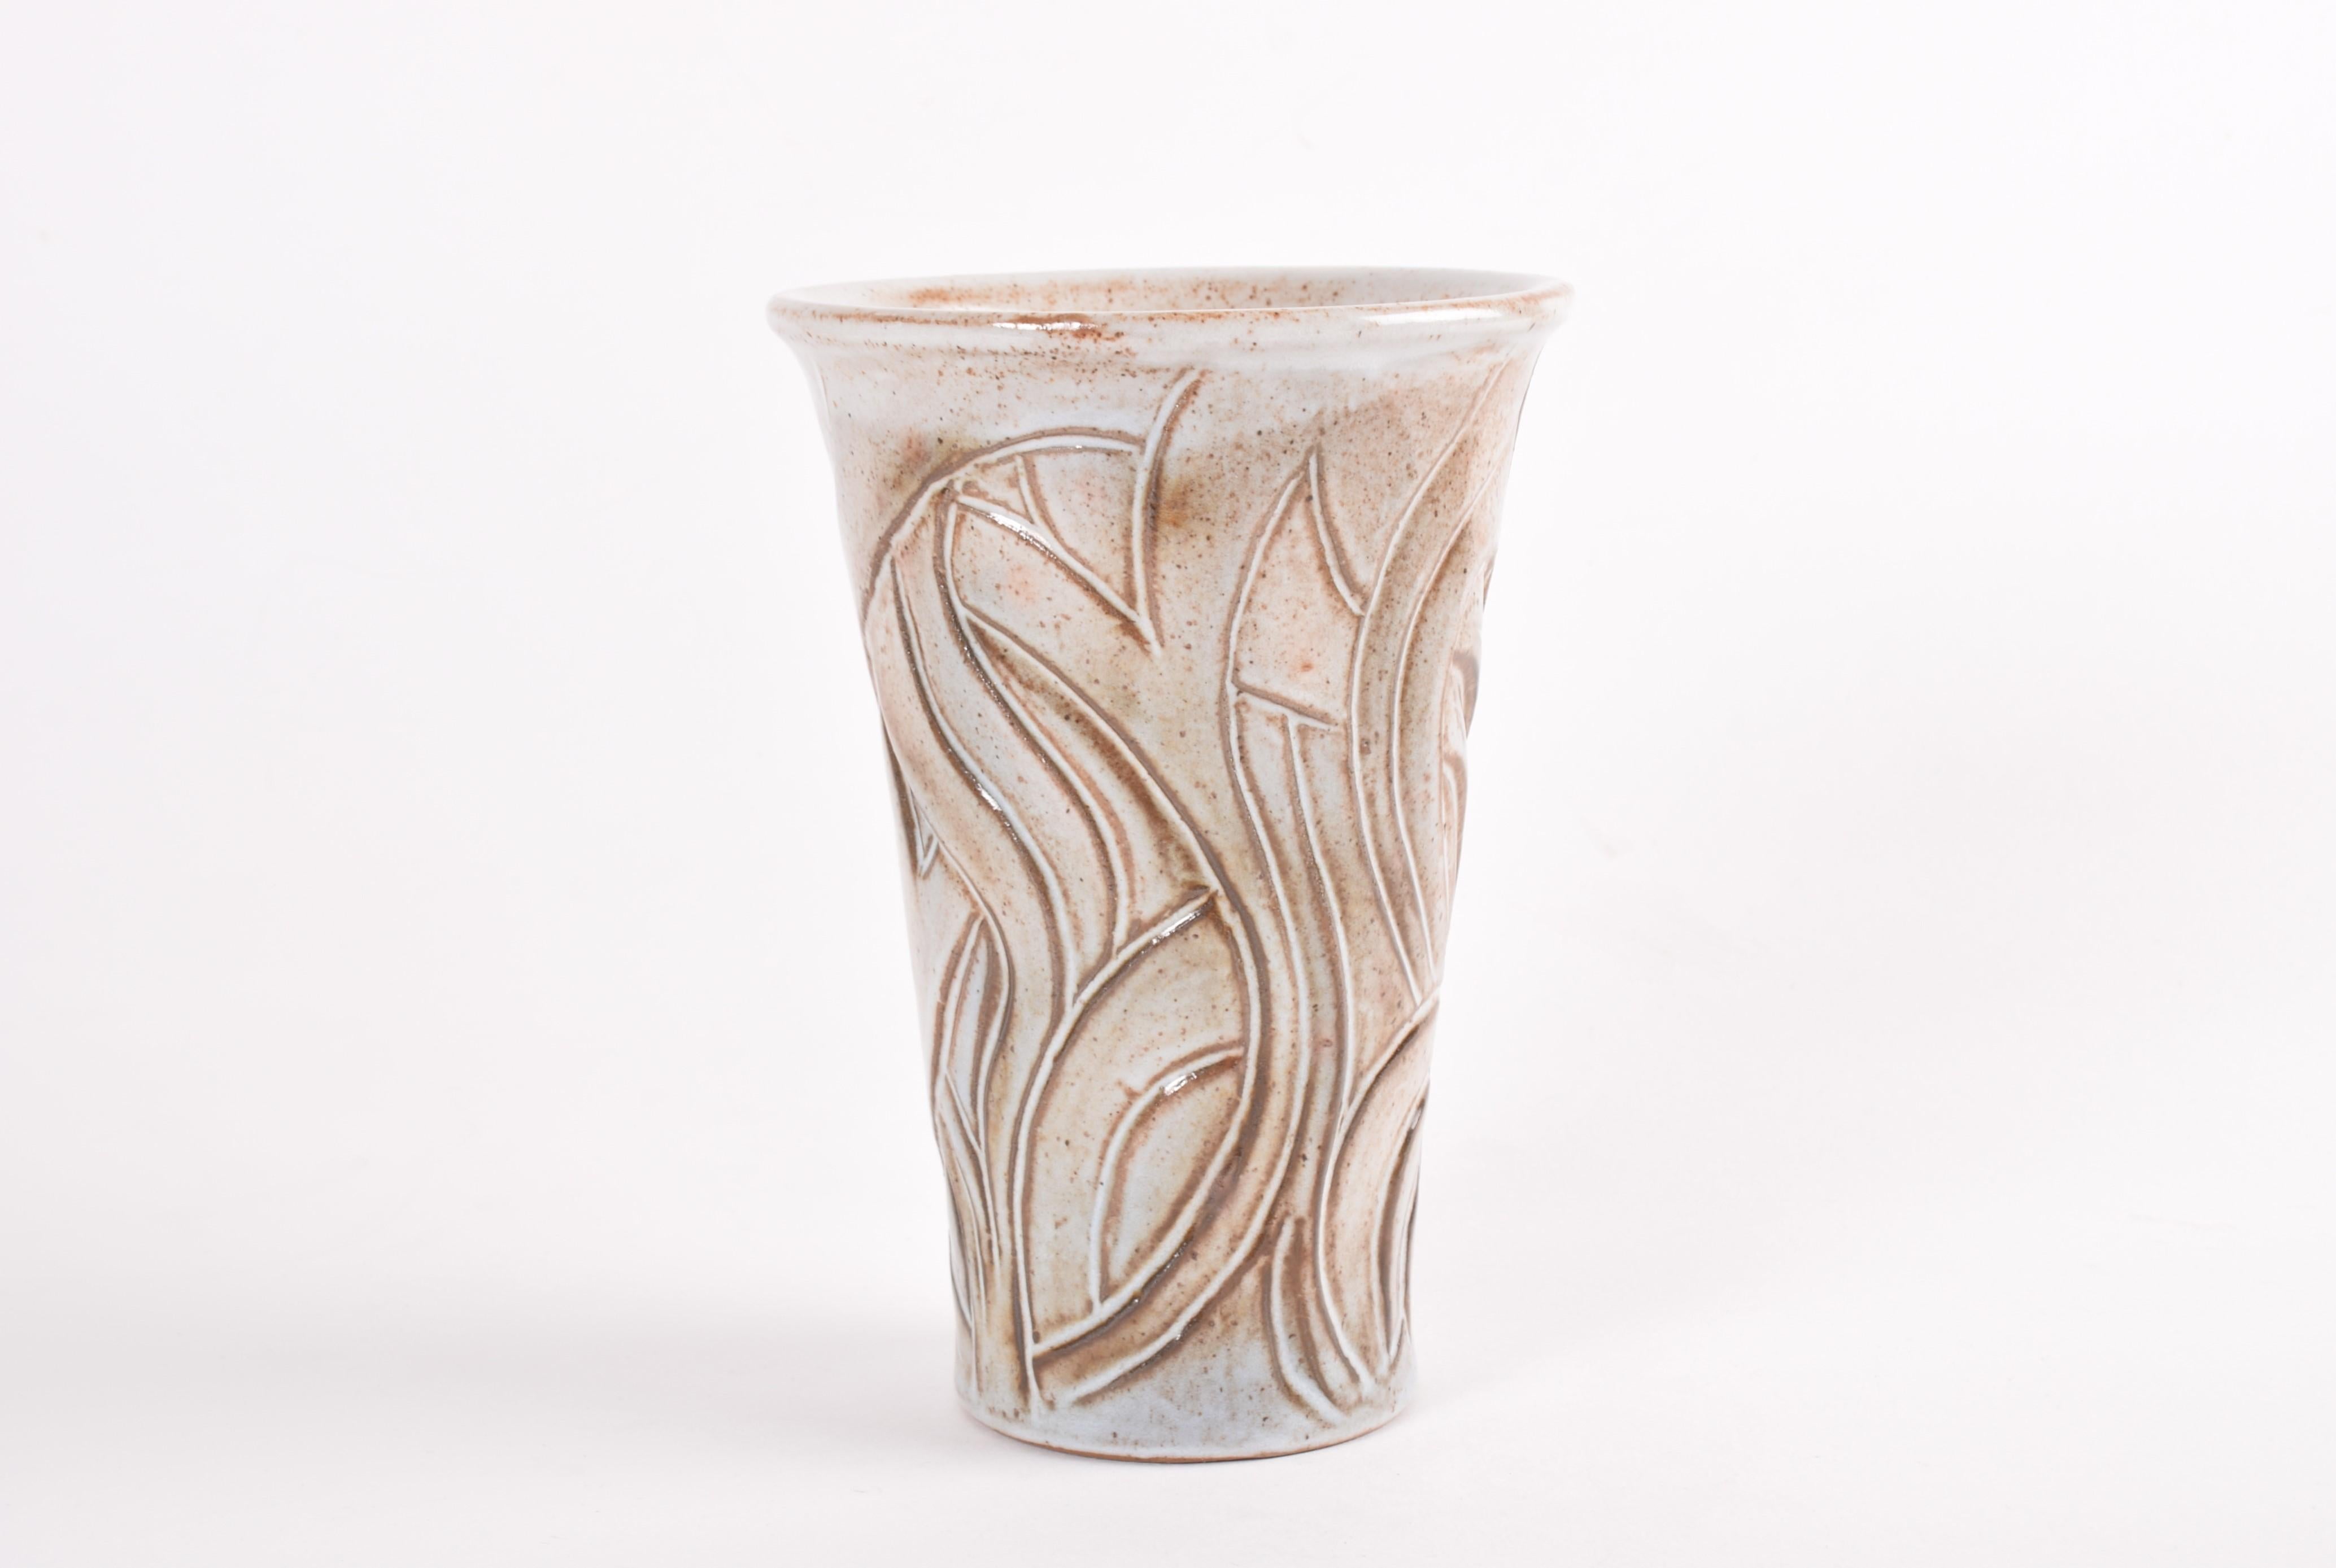 Vase en céramique de forme organique du studio de céramique danois L. Hjorth. Le design est très probablement l'œuvre d'Eva Sjögren (1930-2019). Fabriqué dans les années 1950.

Elle a une belle glaçure beige et brune avec des mouchetures et un peu